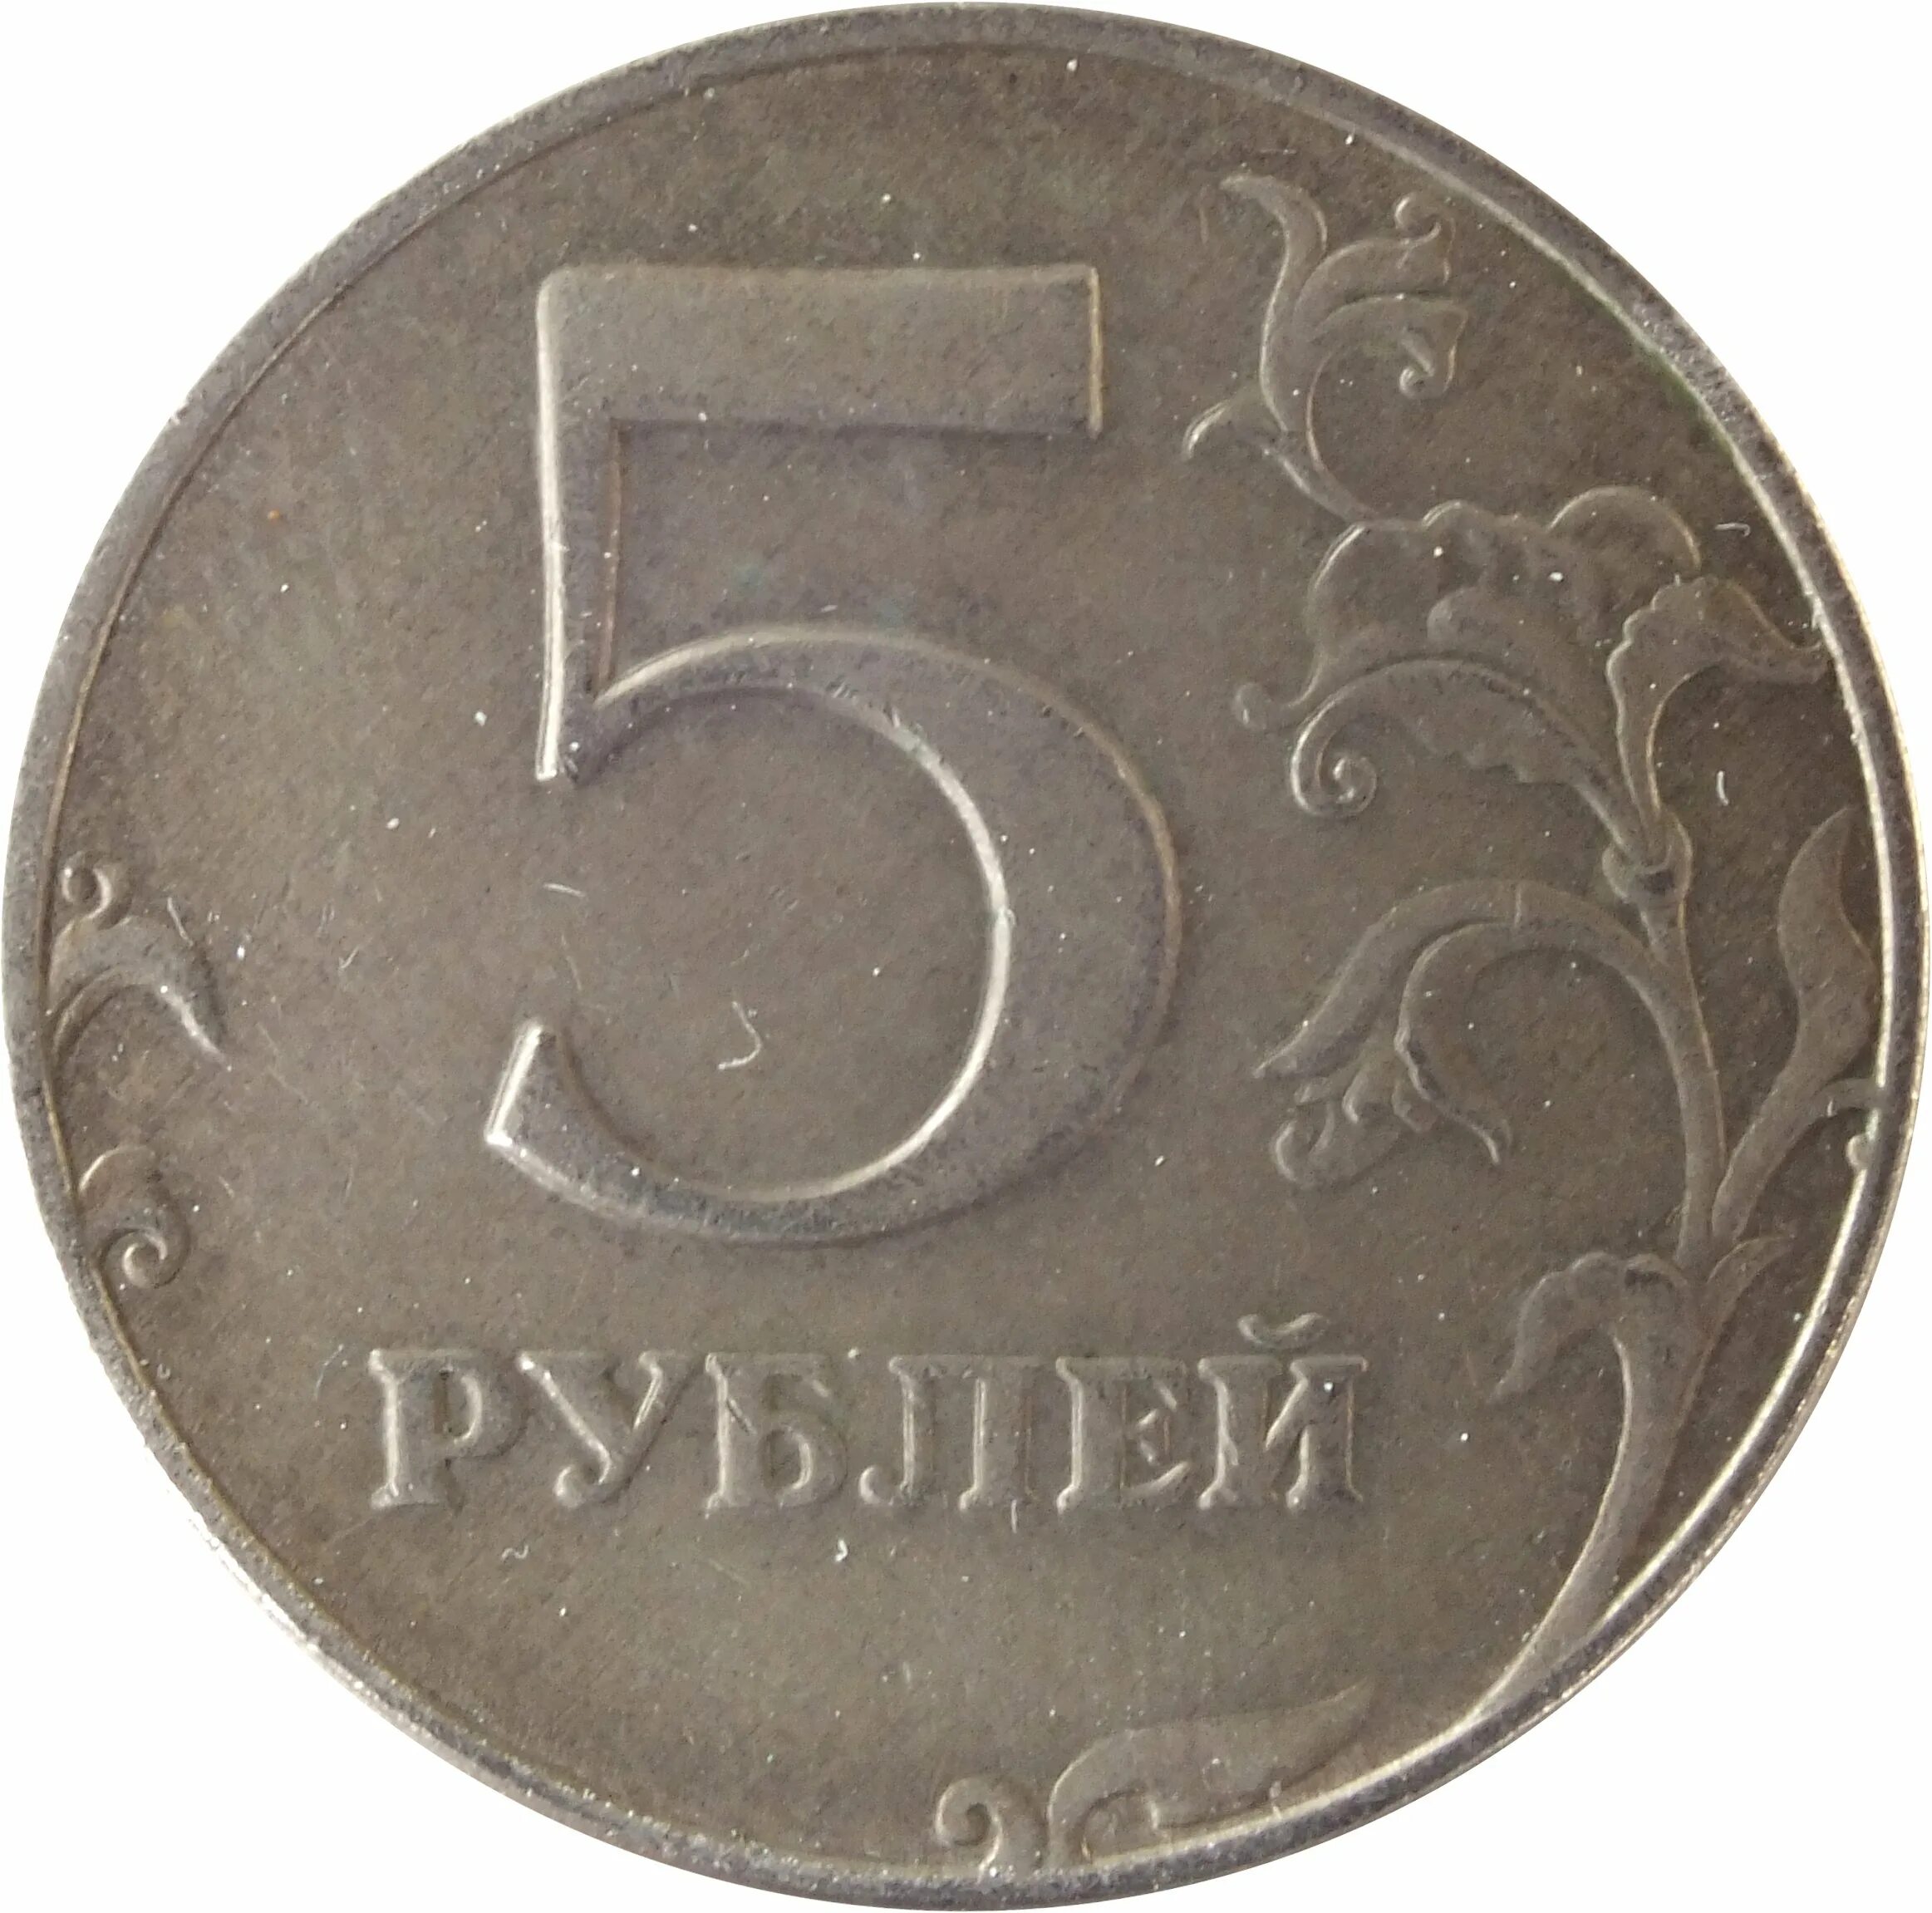 5 рублей стороны. Монета 5 рублей. Монета 5 рублей реверс. Монета "5 рублей 1907 года". Монета 5 рублей без фона.